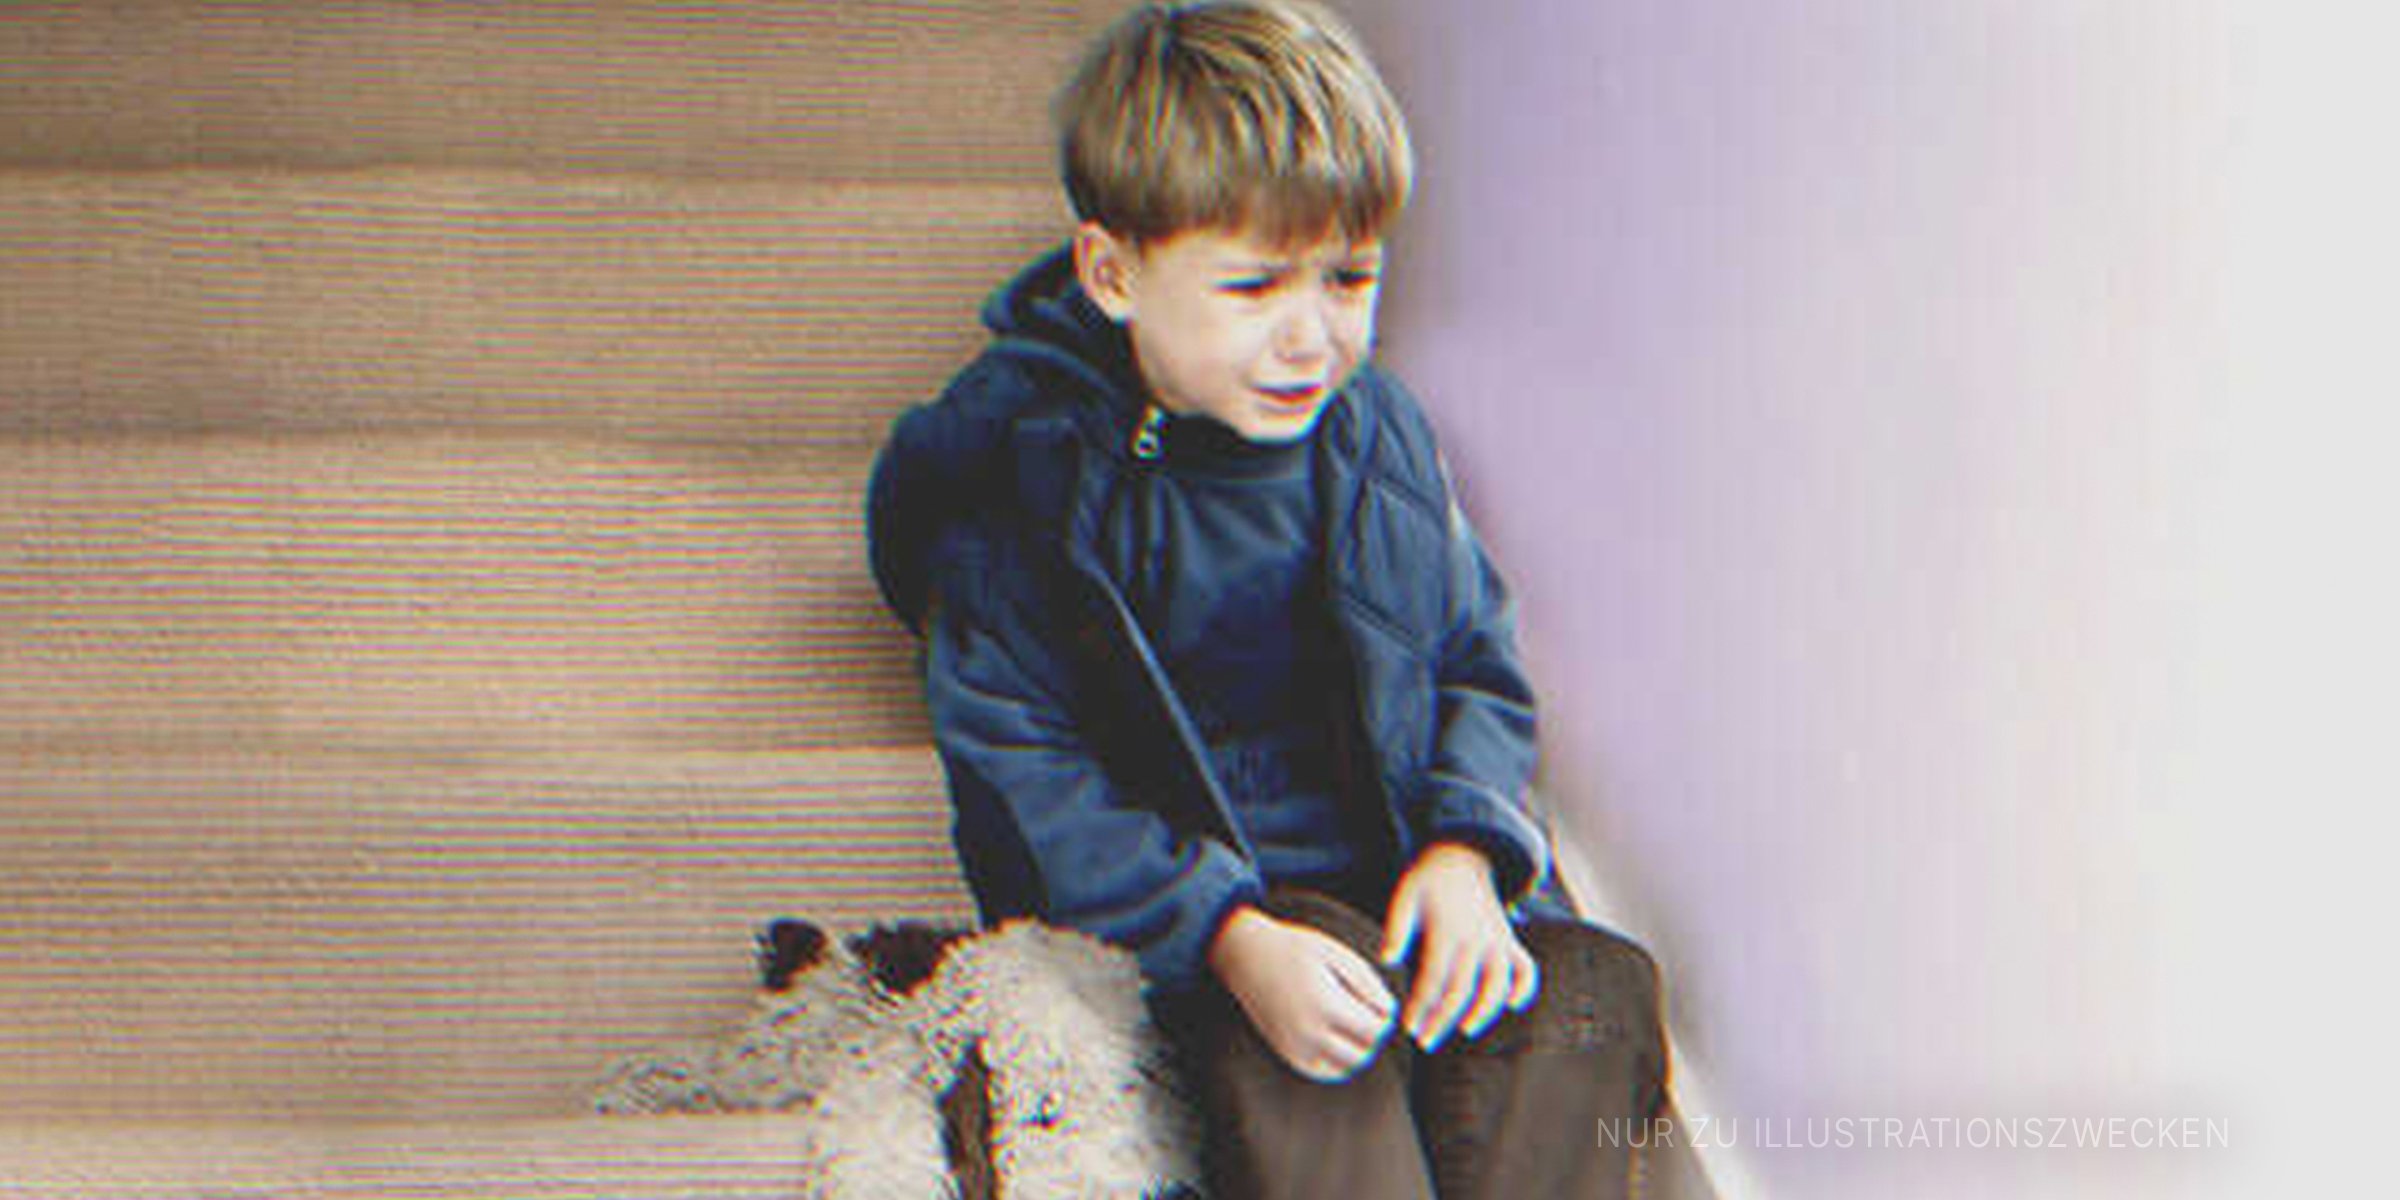 Kleiner Junge weint auf der Treppe | Quelle: Shutterstock